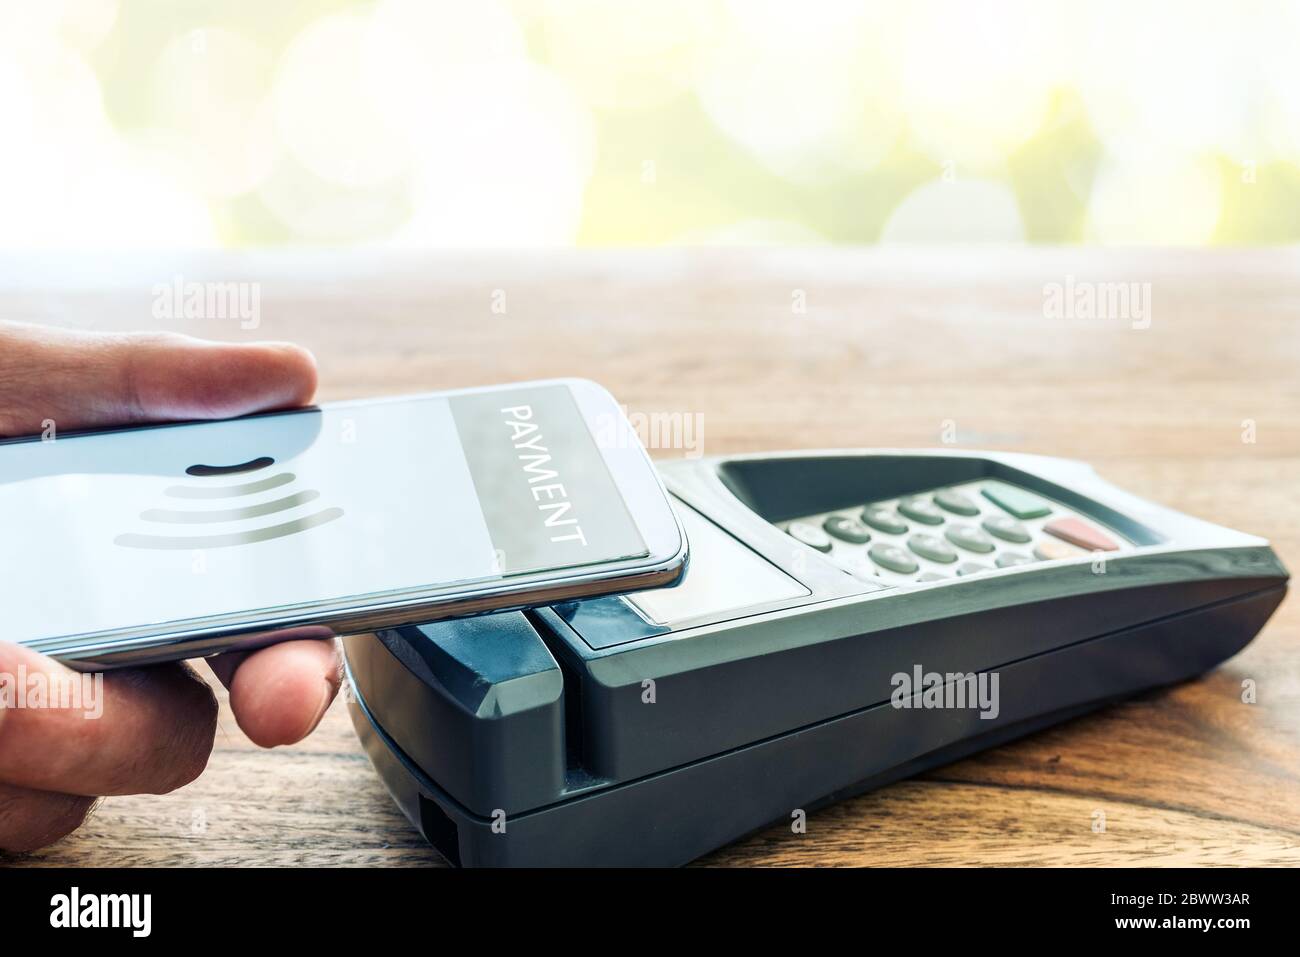 Paiement sans contact utilisant le concept de smartphone, personne tenant le téléphone contre le terminal de paiement POS Banque D'Images